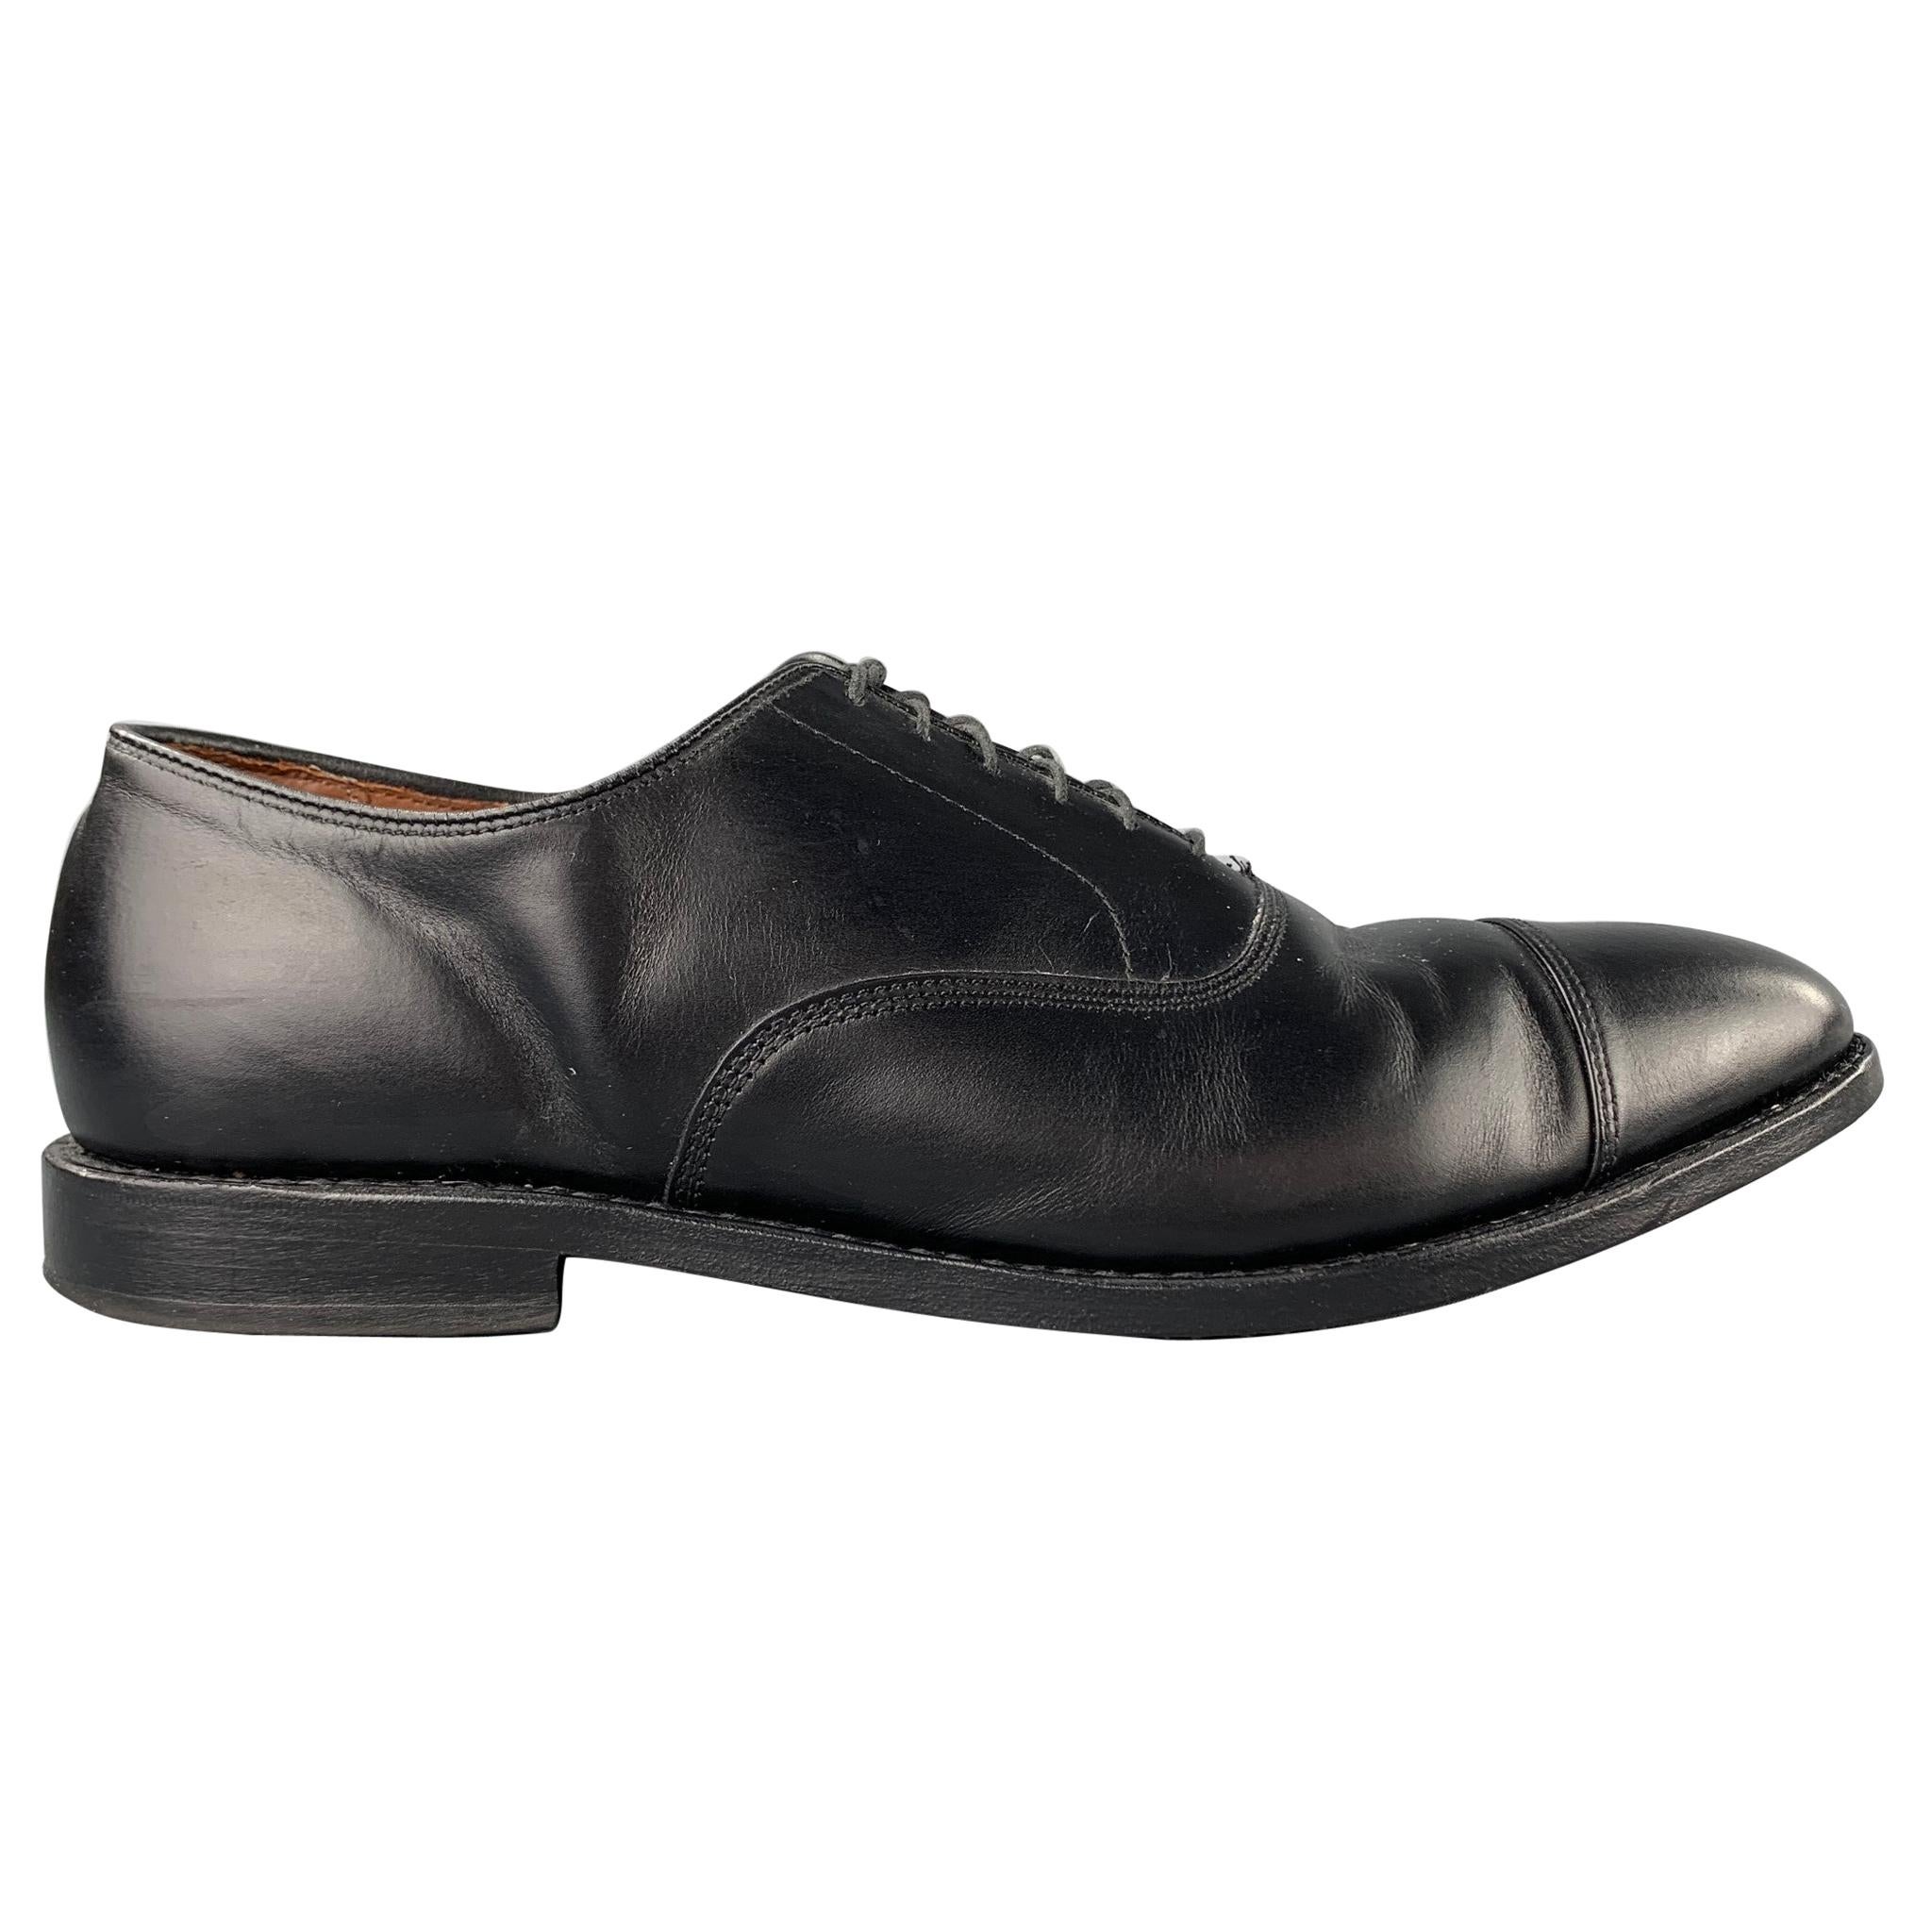 ALLEN EDMONDS Park Avenue Size 11.5 Black Leather Cap Toe Lace Up Shoes